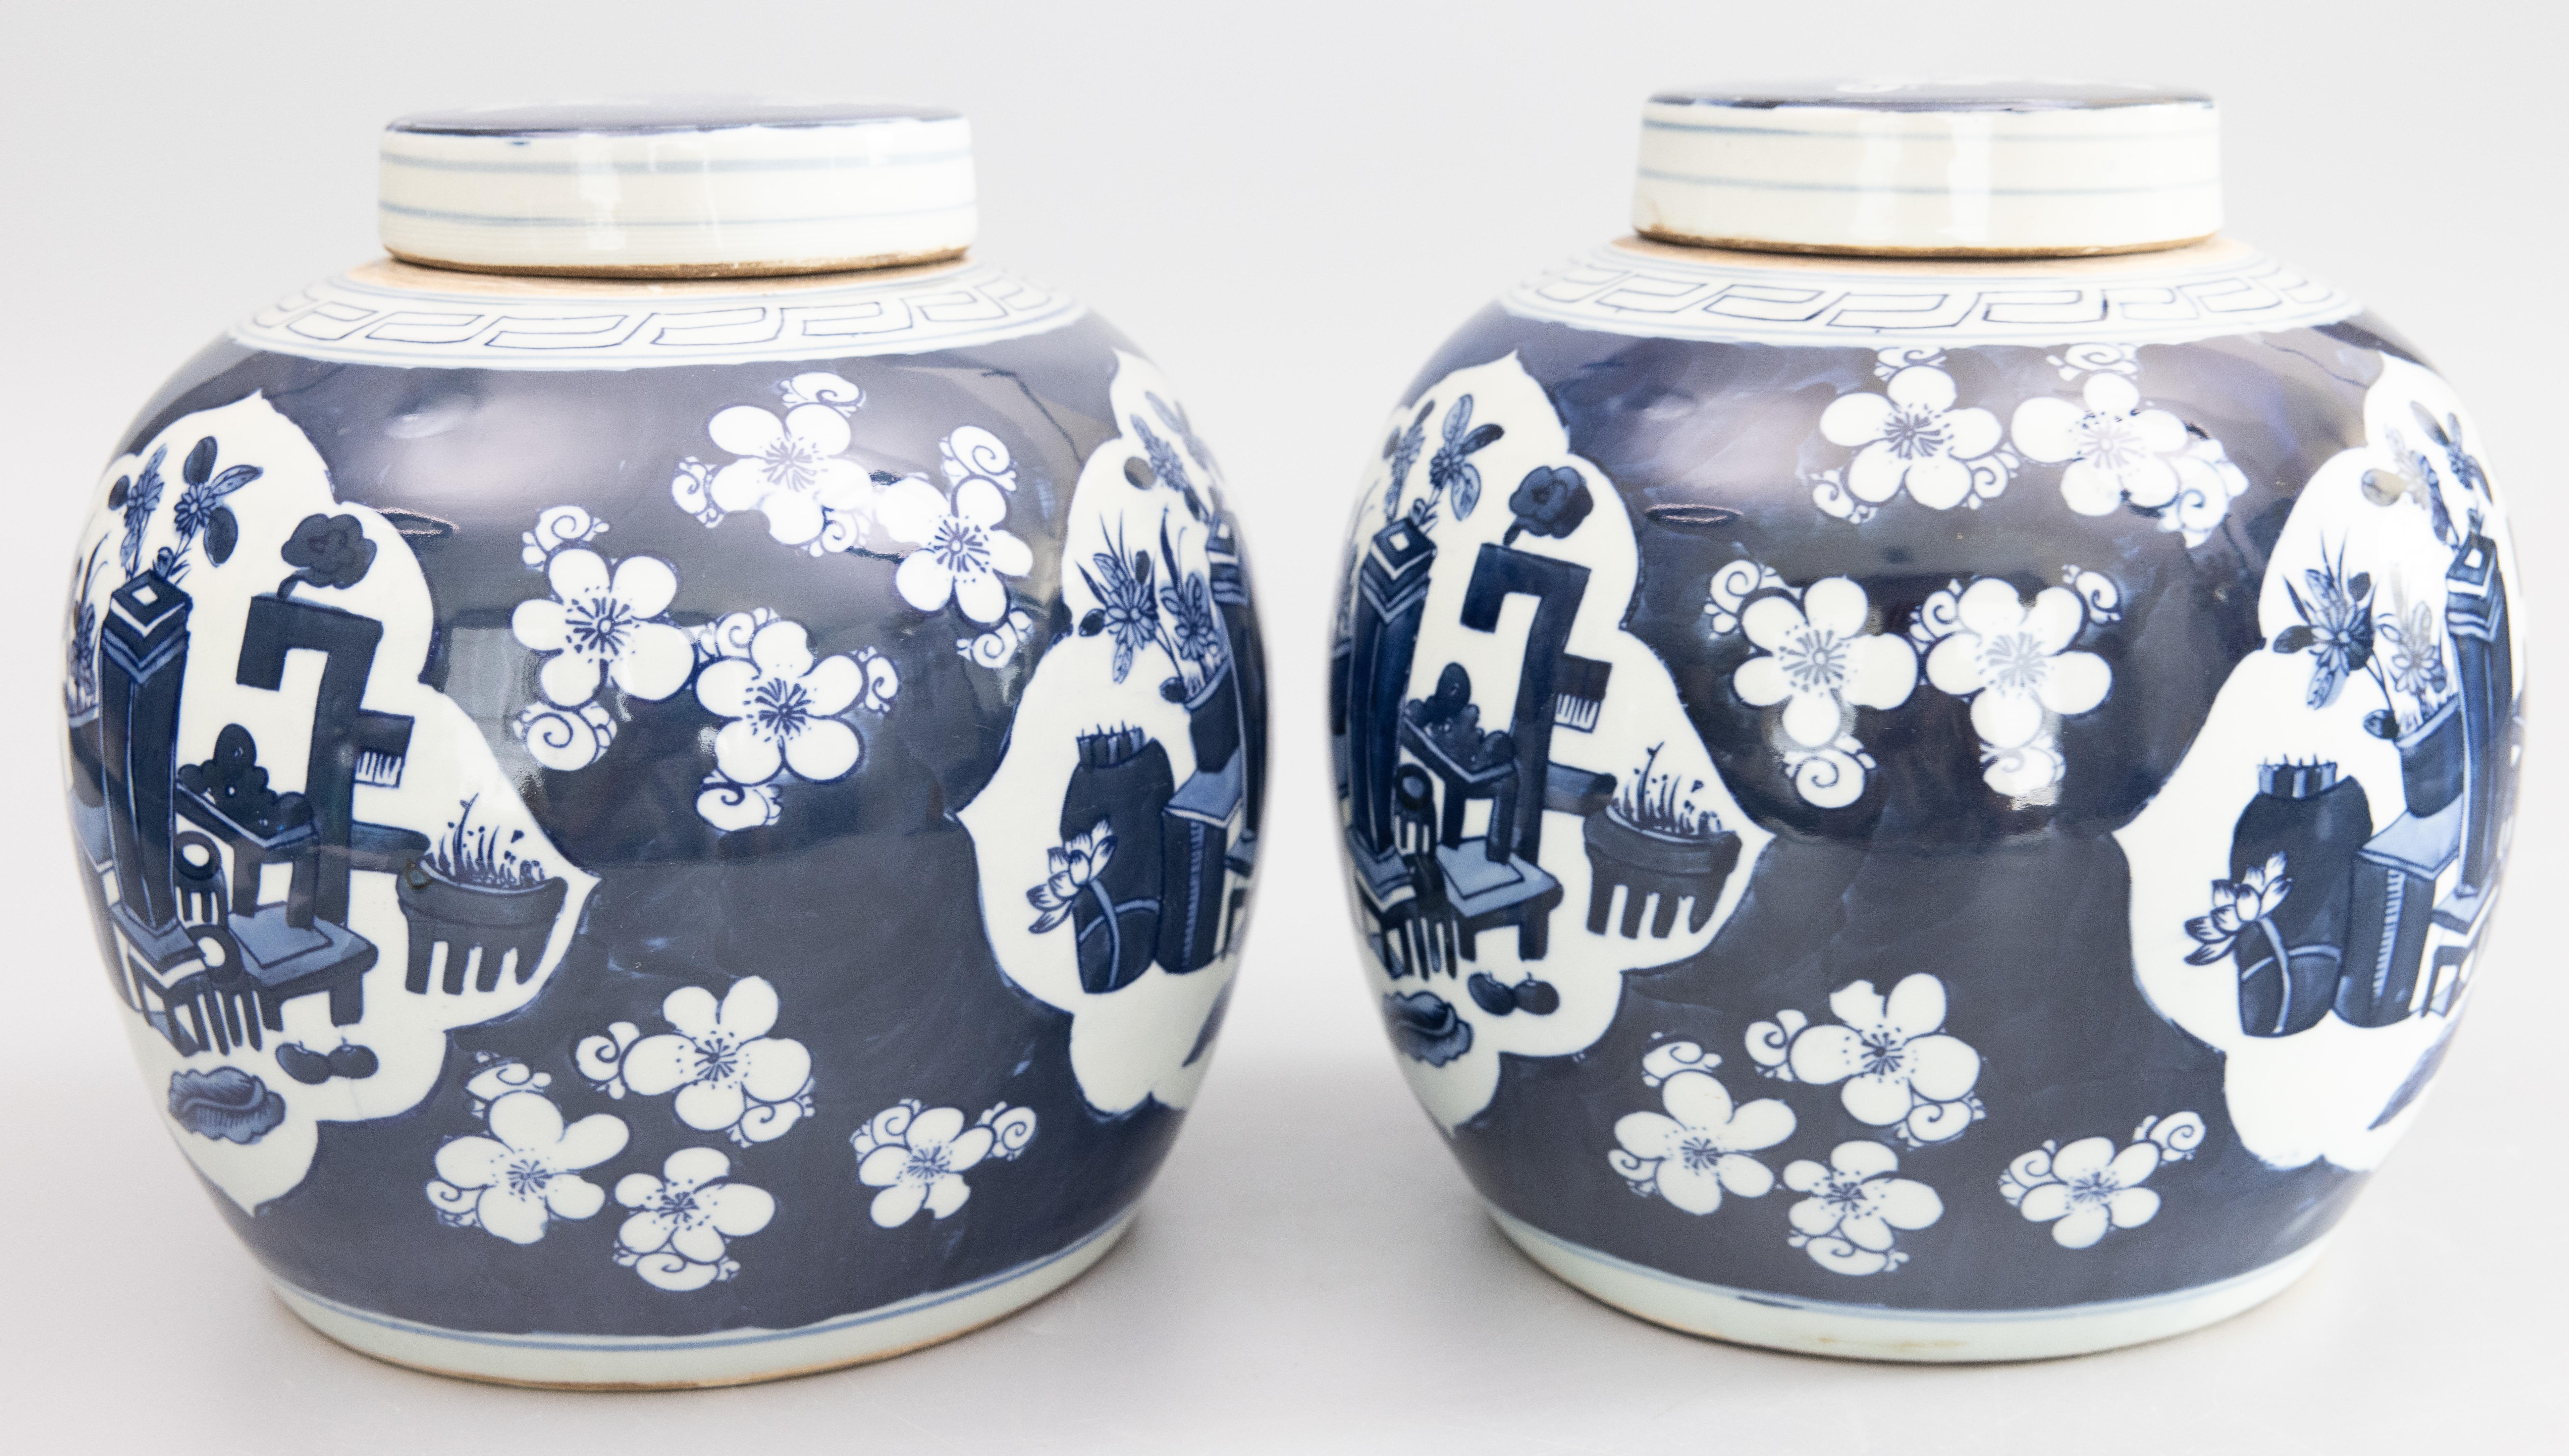 Ein hübsches Paar handgefertigter keramischer Ingwerdosen mit Deckel im chinesischen Kangxi-Stil, handbemalt in leuchtendem Kobaltblau und Weiß. Diese fabelhaften Gläser sind mit Blumentöpfen in einer Terrassenszene verziert, die von einem